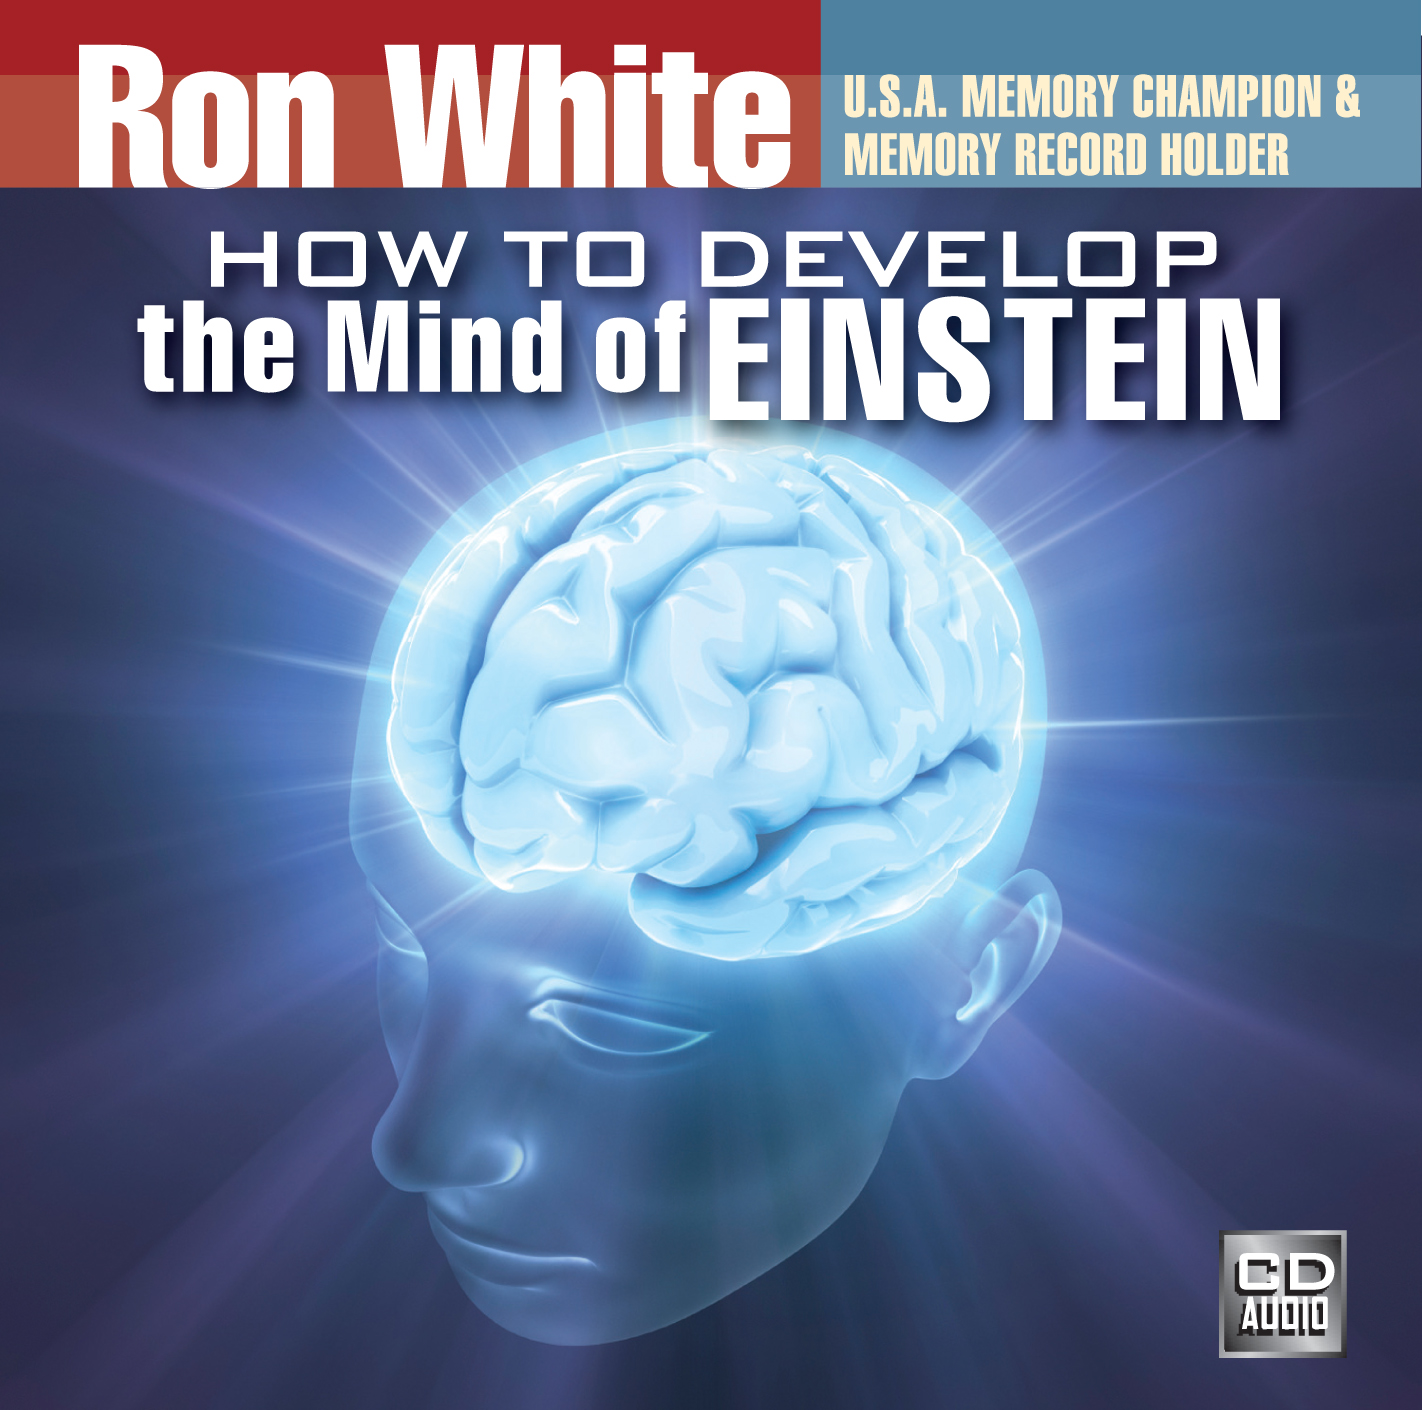 Mind of Einstein CD cover_Layout 1